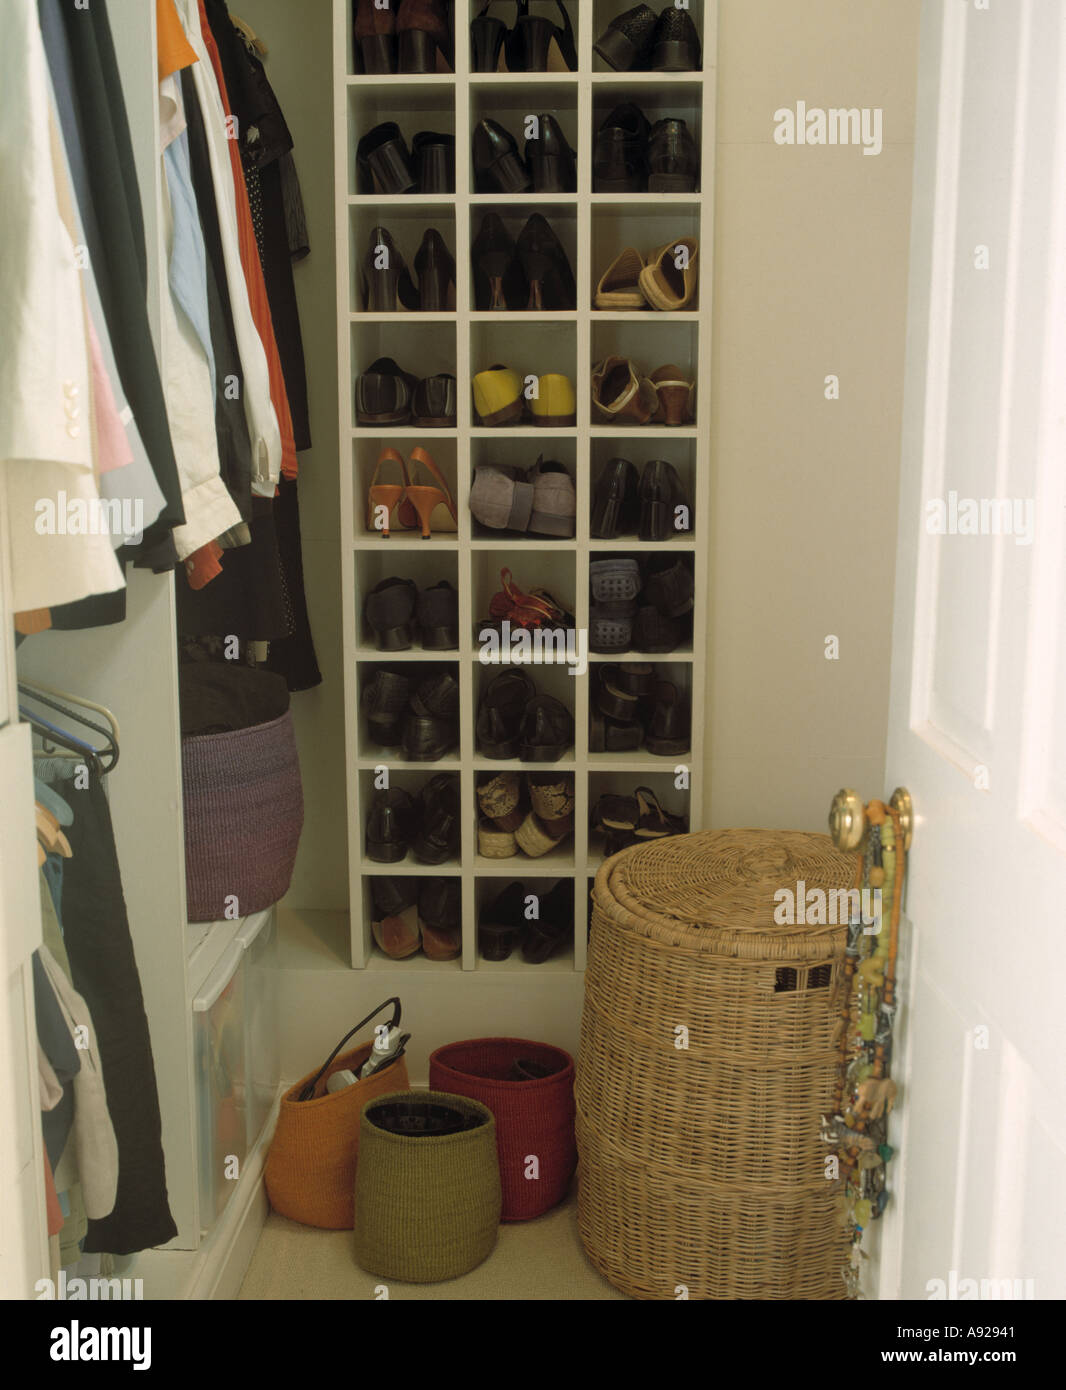 Nahaufnahme des großen begehbaren Kleiderschrank mit Sisal Aufbewahrung  Körbe und Wicker Wäschekorb vor Cube Regale Lagerung Schuhe Stockfotografie  - Alamy